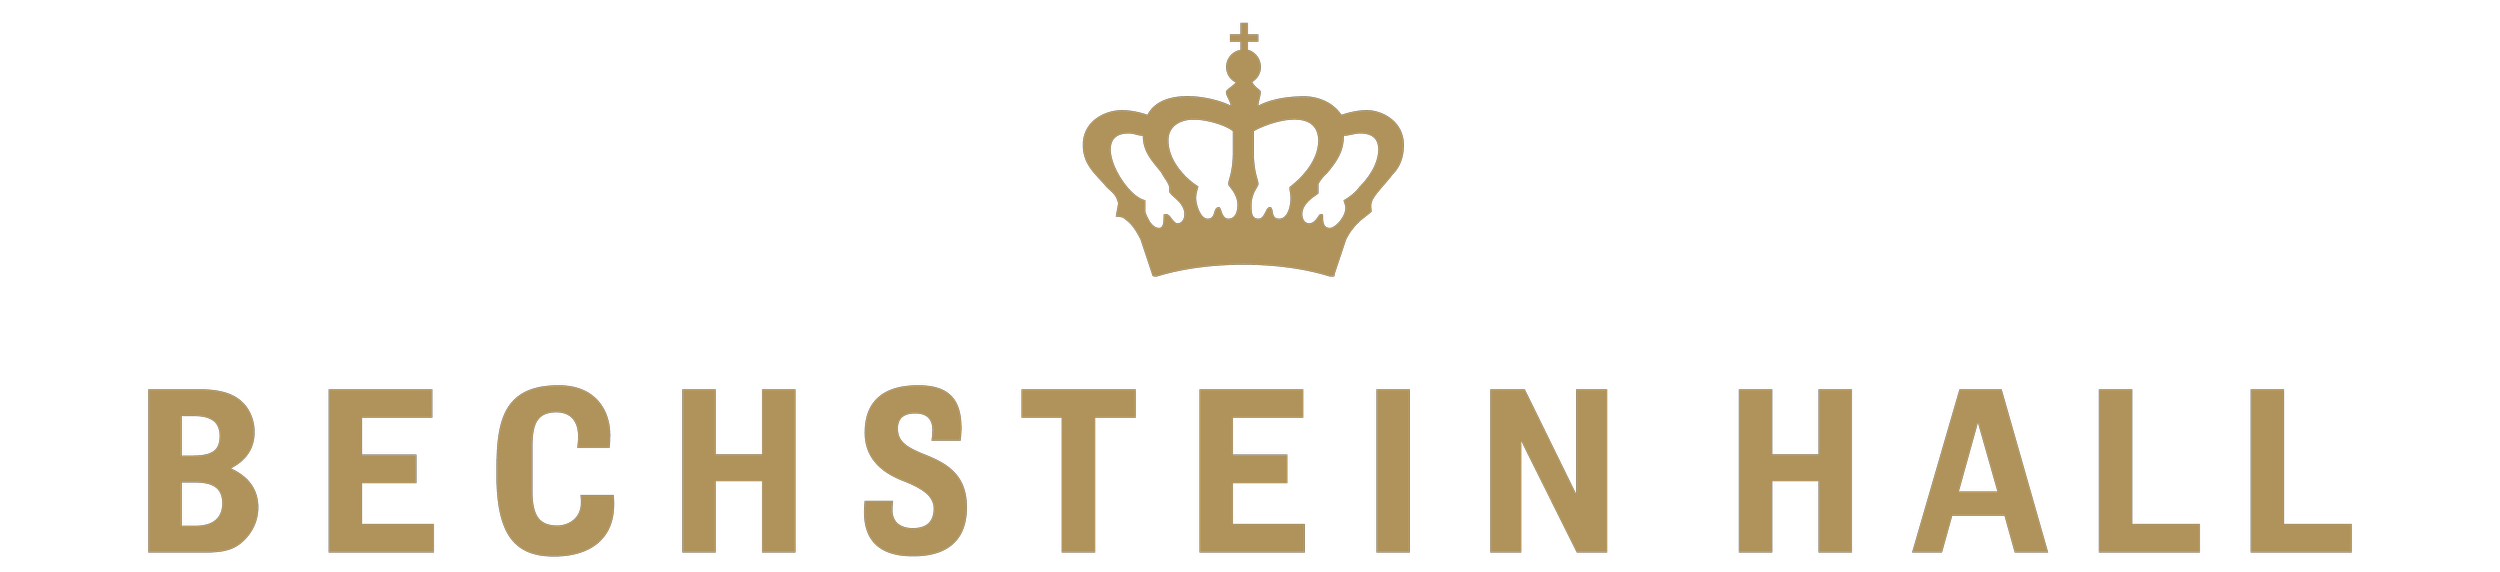 logo 1-01.png